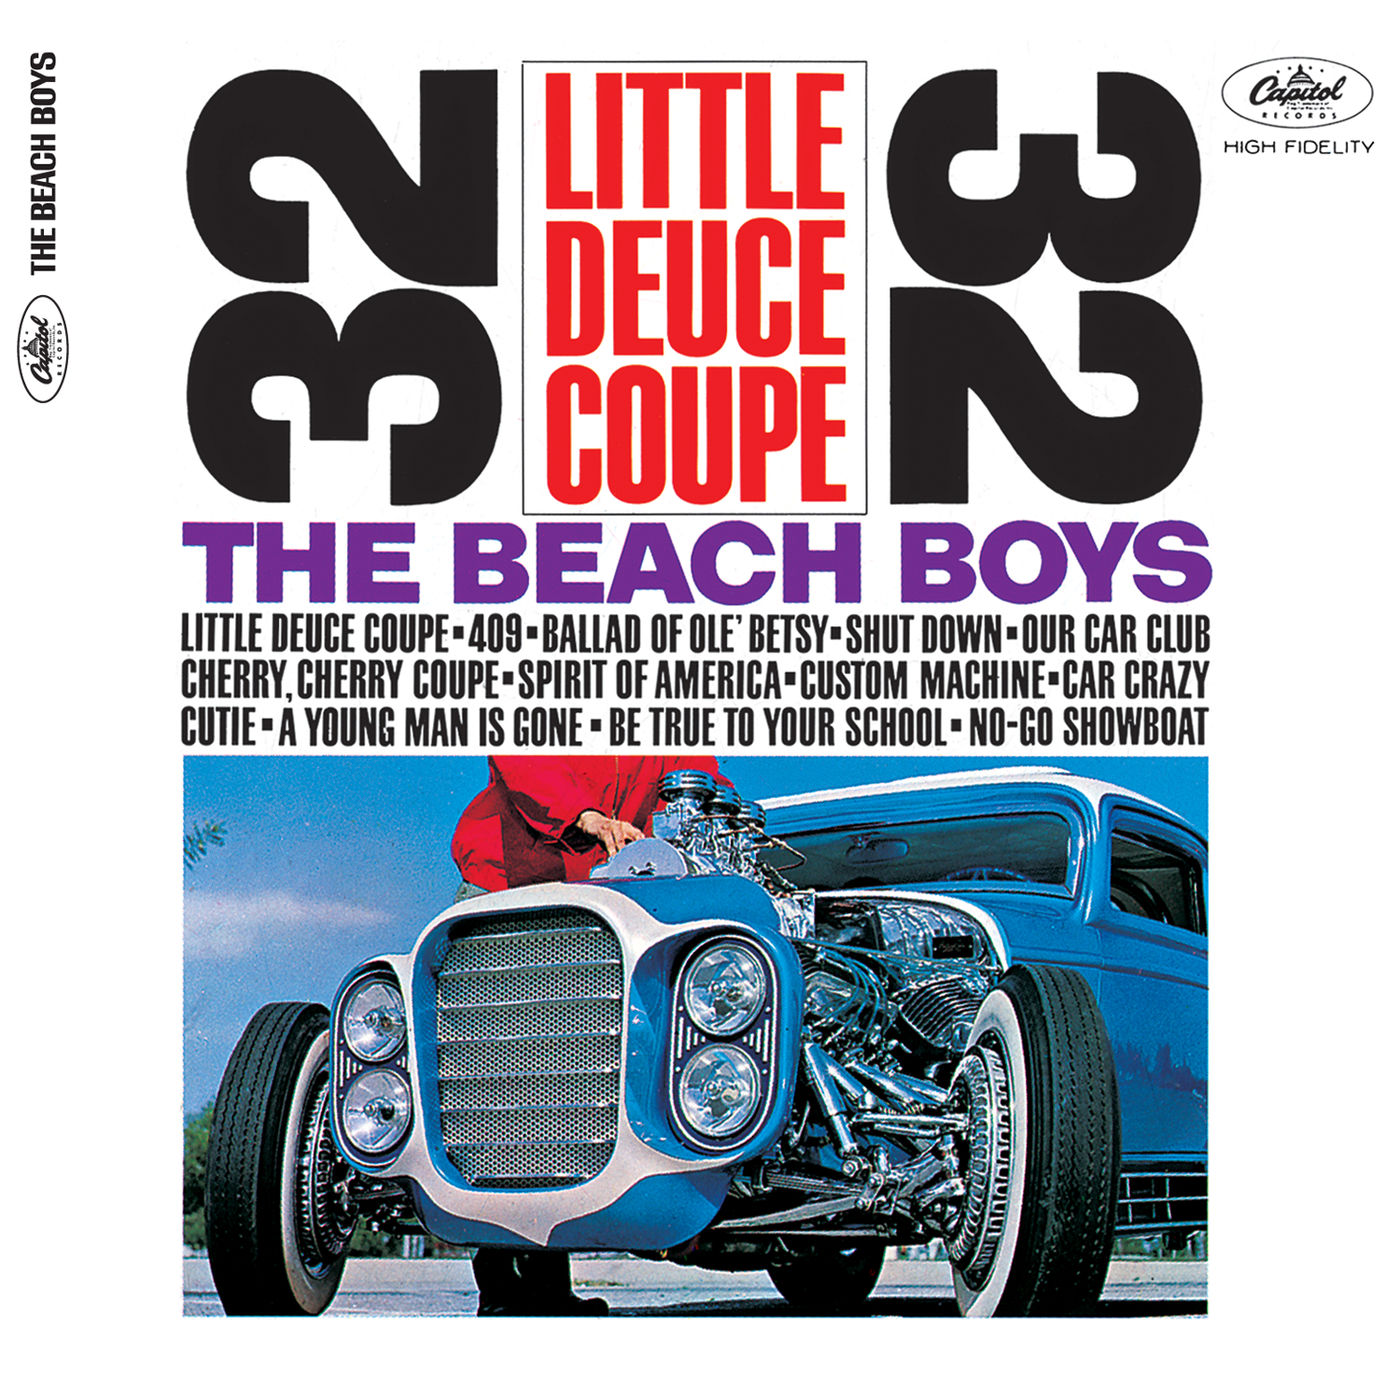 The Beach Boys – Little Deuce Coupe (Stereo)【192kHz／24bit】意大利区-OppsUpro音乐帝国